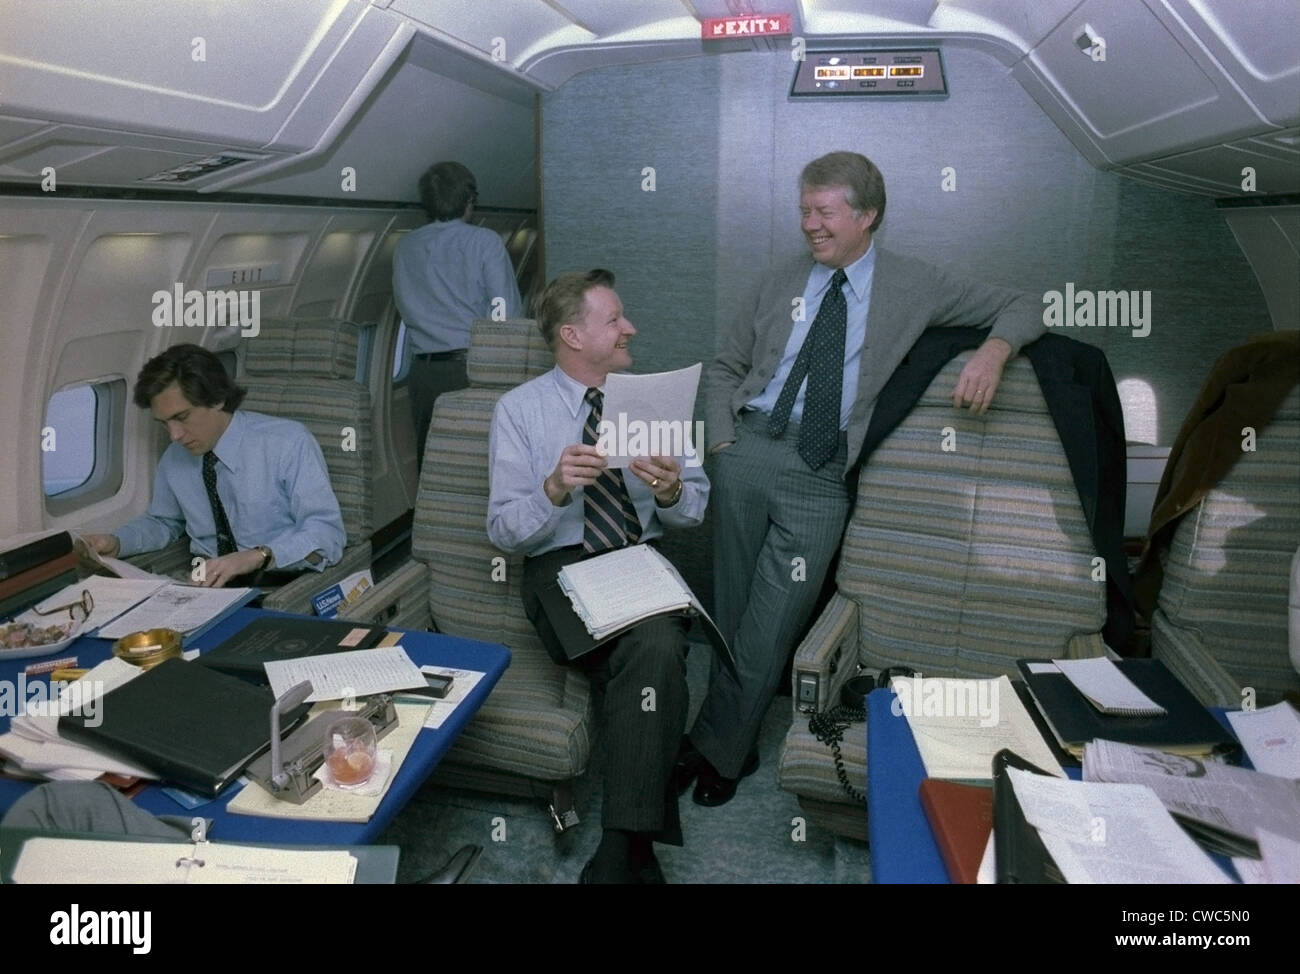 Zbigniew Brzezinski und Jimmy Carter in einem entspannten Gespräch an Bord der Air Force One, während eine junge Mitarbeiterin inmitten Papiere in arbeitet Stockfoto